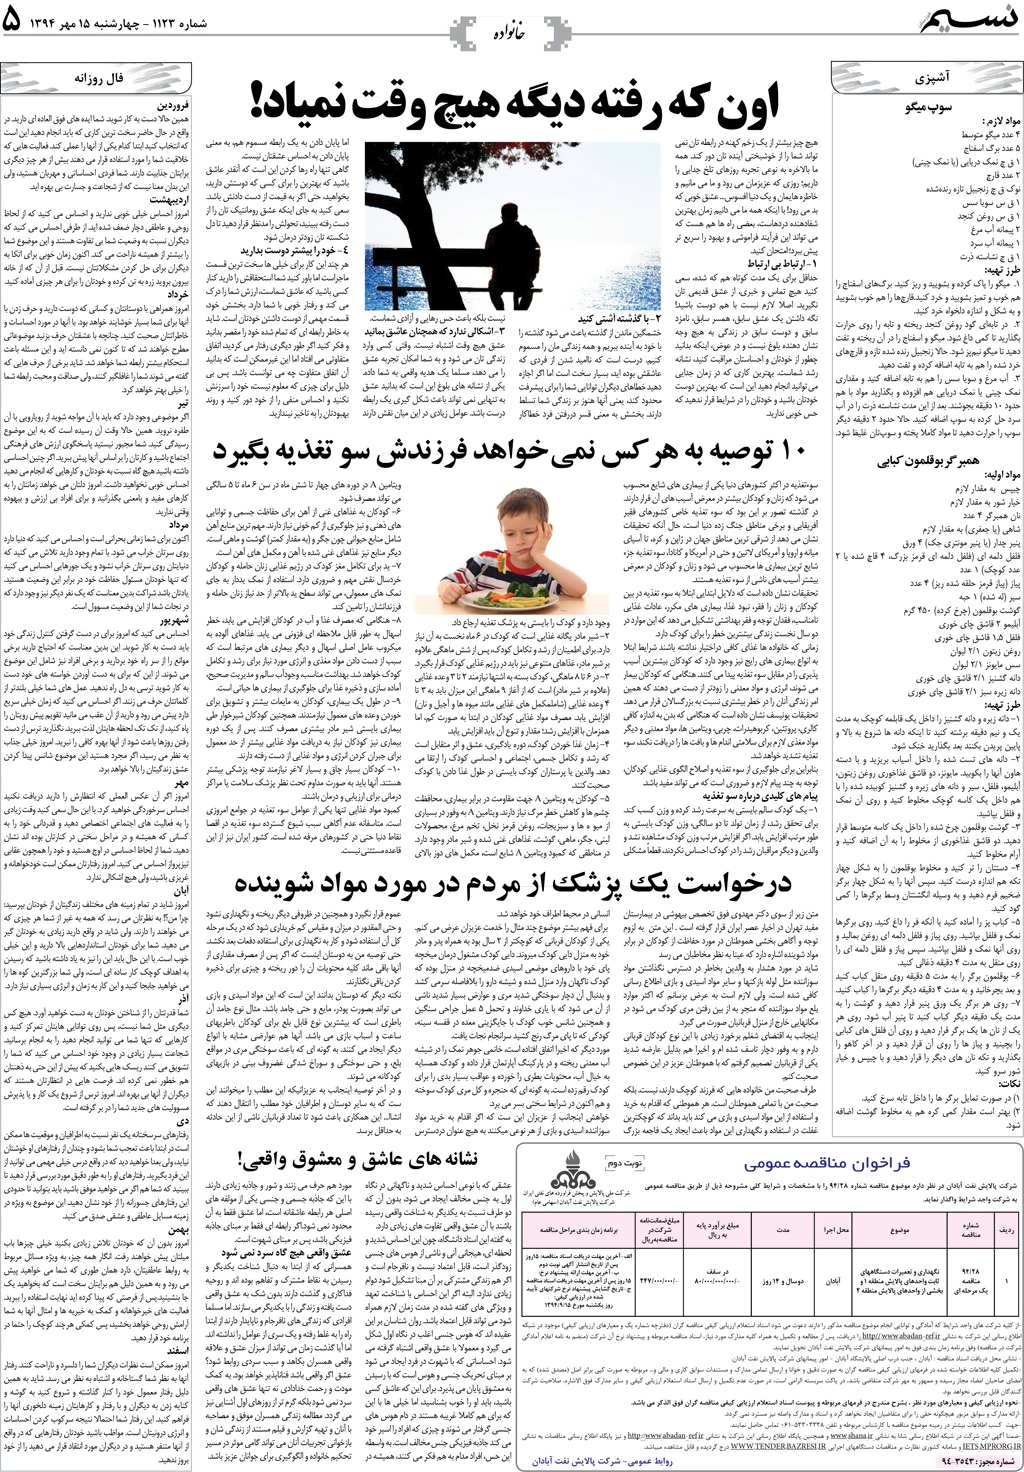 صفحه خانواده روزنامه نسیم شماره 1123